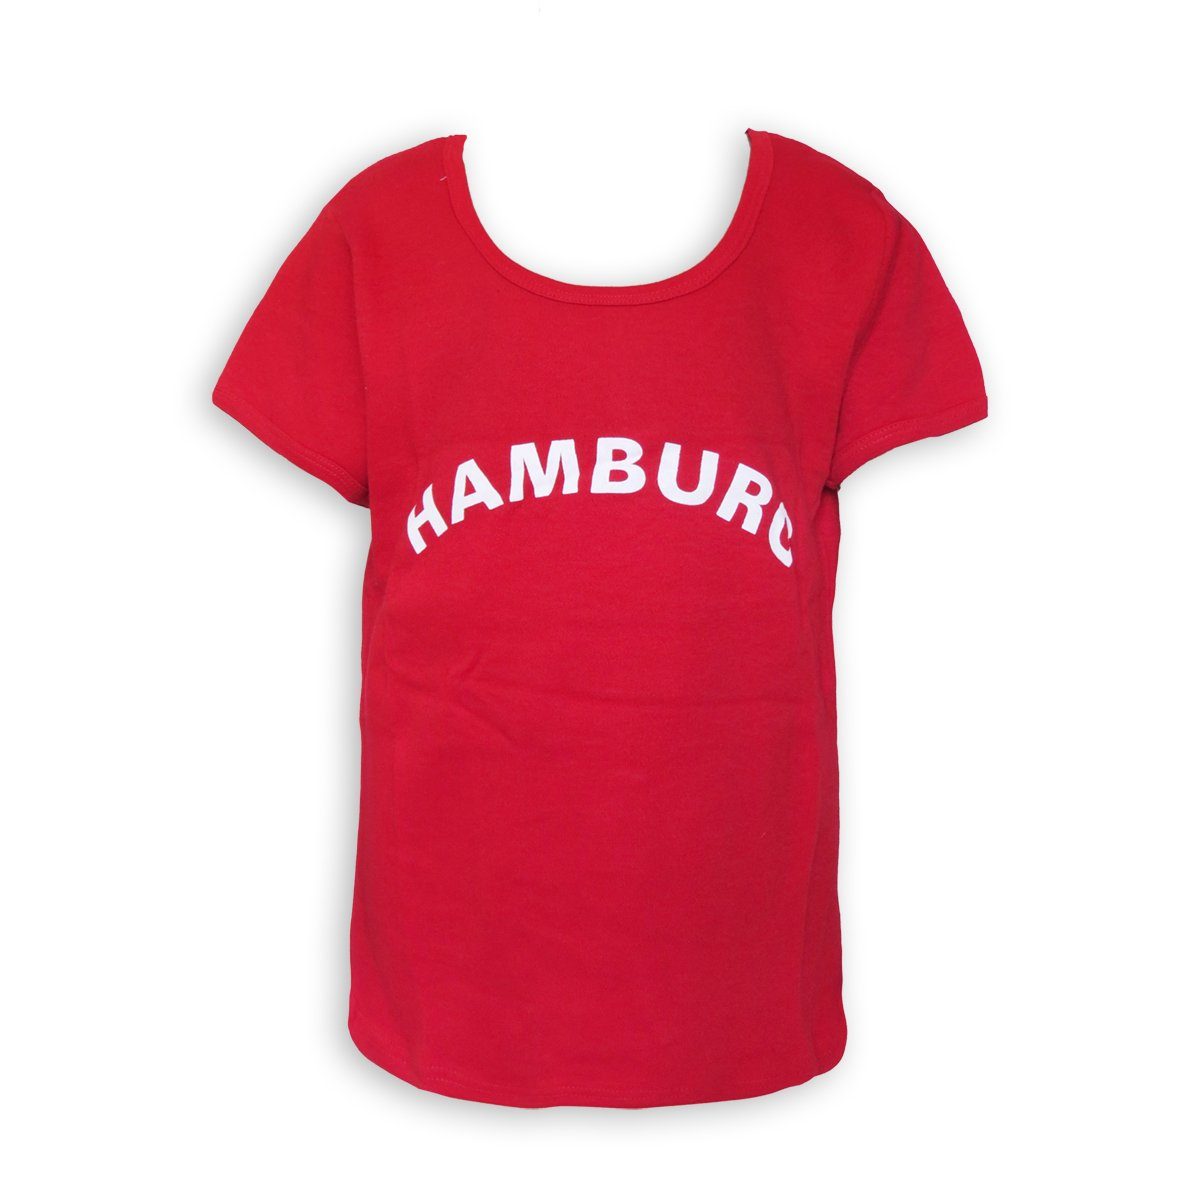 Sonia Originelli T-Shirt Shirt Top für Mädchen Teens mit Hamburg Aufdruck rot